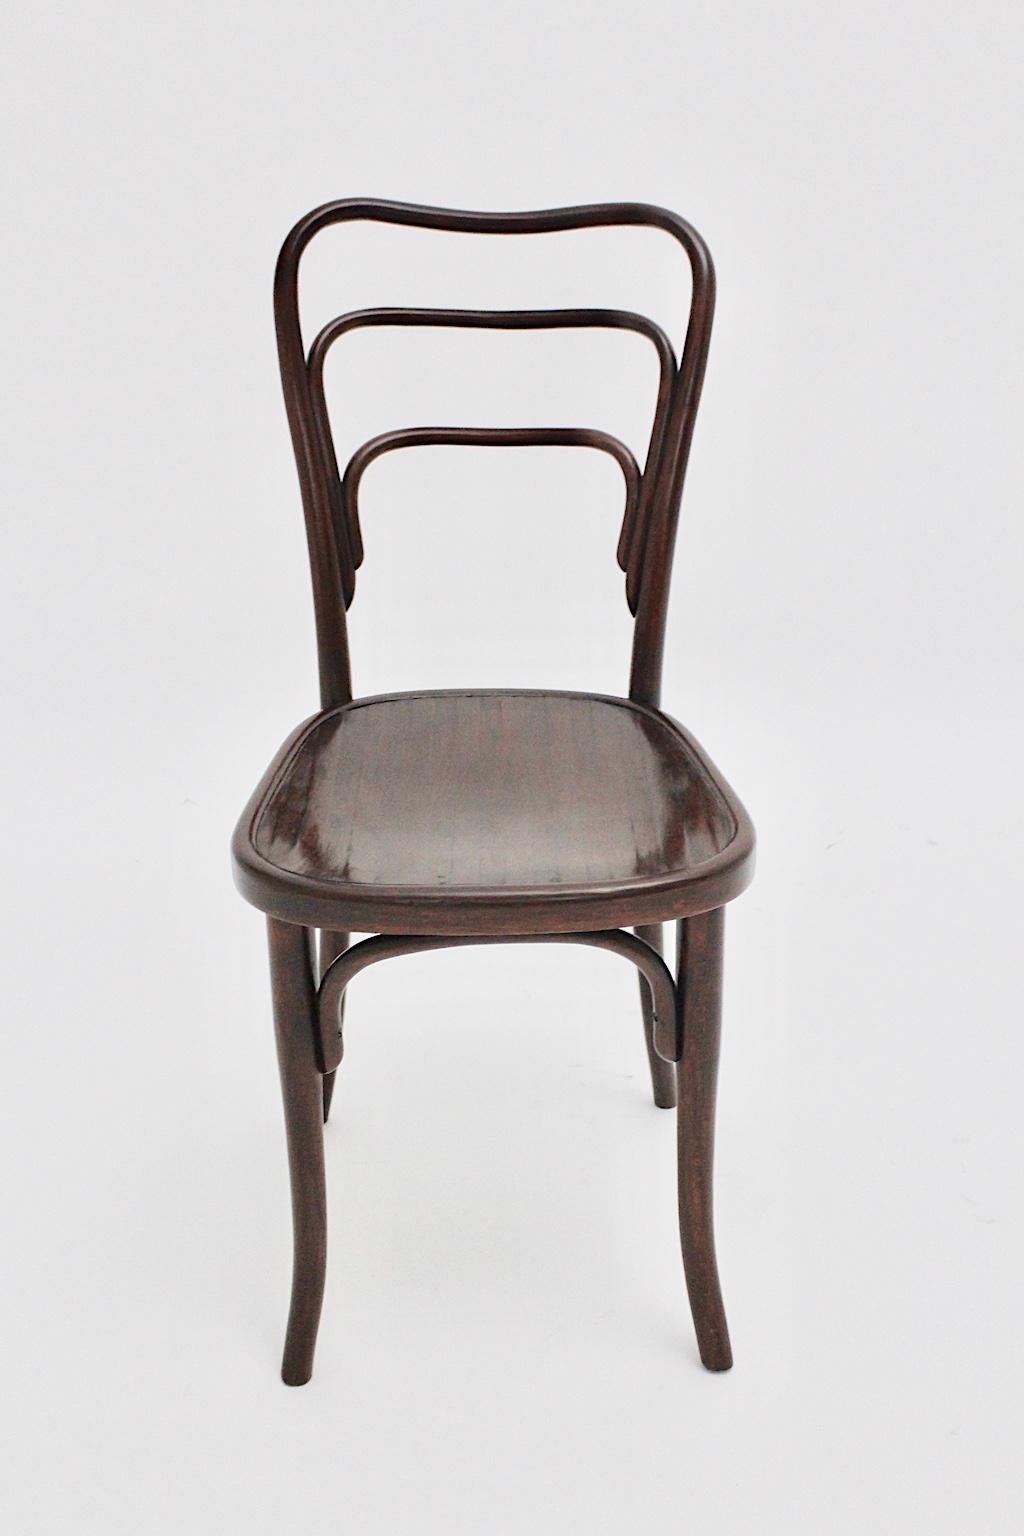 Chaise Jugendstil en bois courbé Le modèle n° 249 a de J. & J. Kohn est une variante de la chaise d'intérieur conçue par Adolf Loos pour le célèbre café-musée au cœur de Vienne.
La chaise était en bois de hêtre courbé, tandis que le siège était en